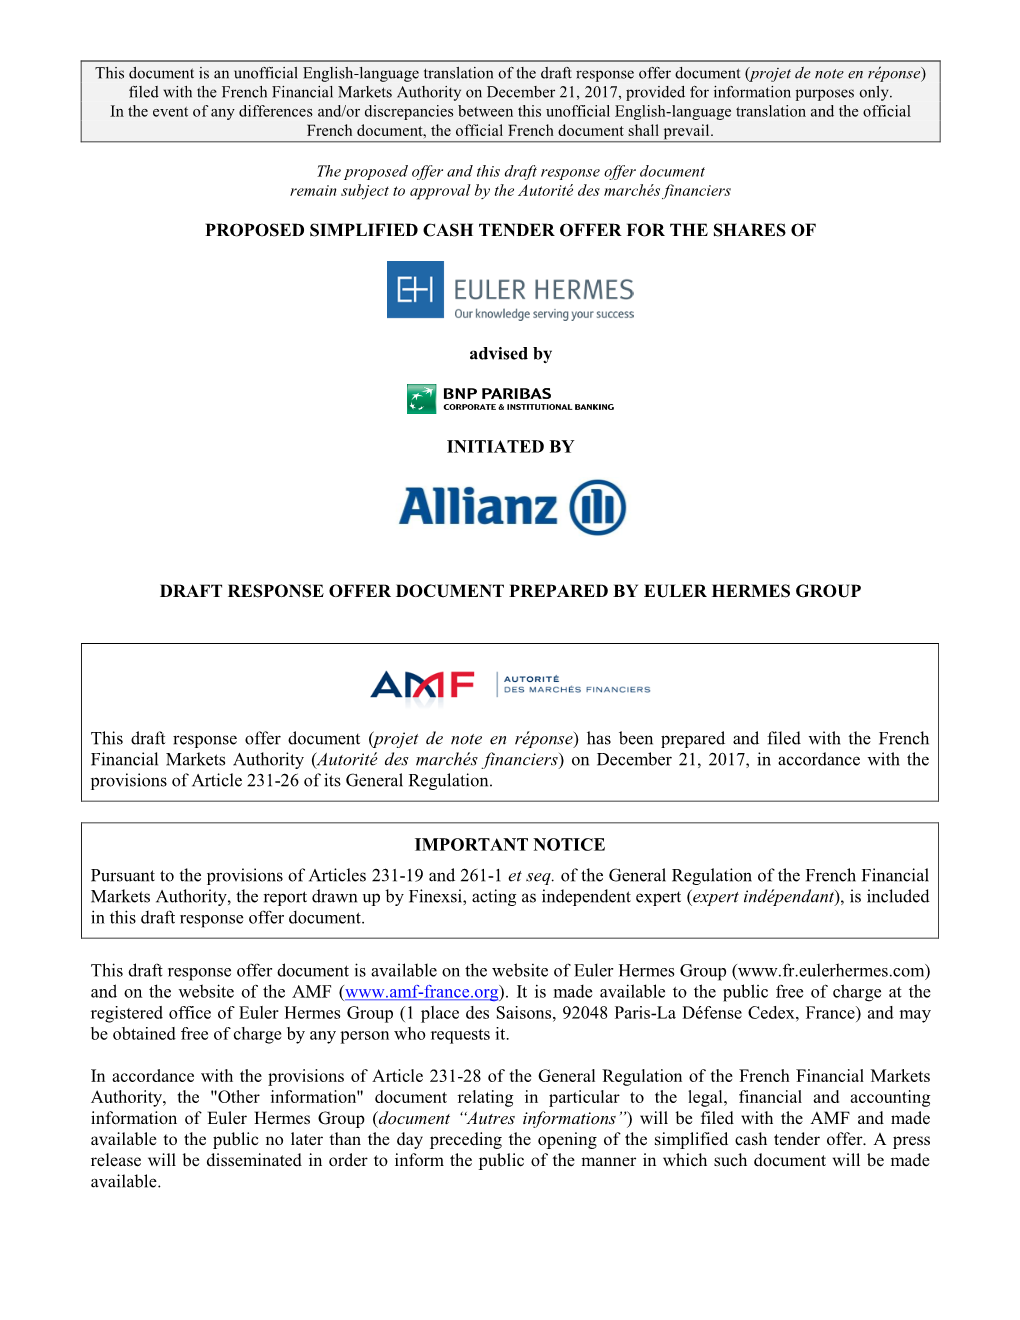 Draft Response Offer Document Prepared by Euler Hermes Group